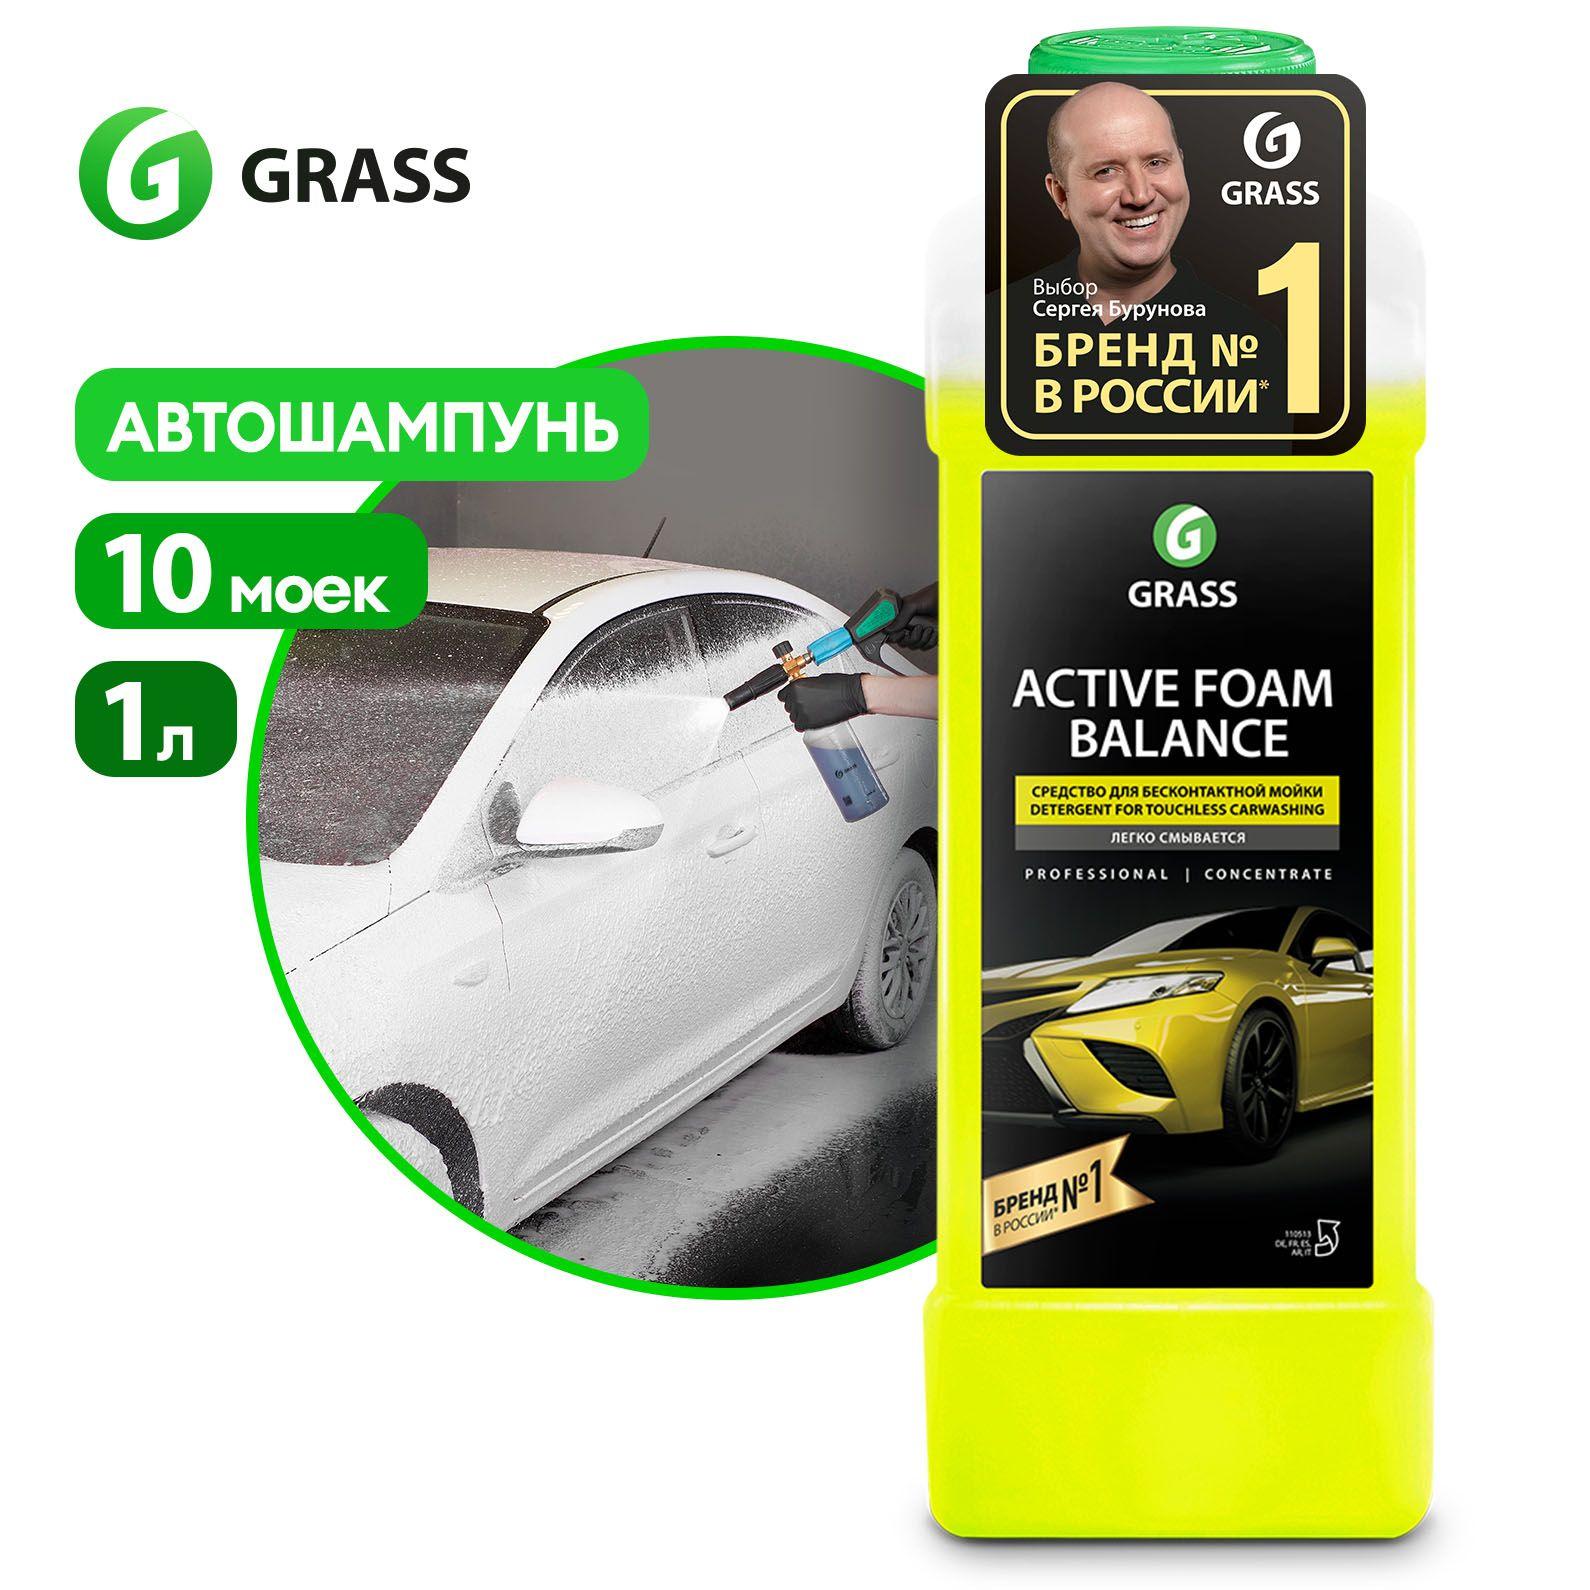 Grass | GRASS Автошампунь для бесконтактной мойки / активная пена Active Foam Balance 1л